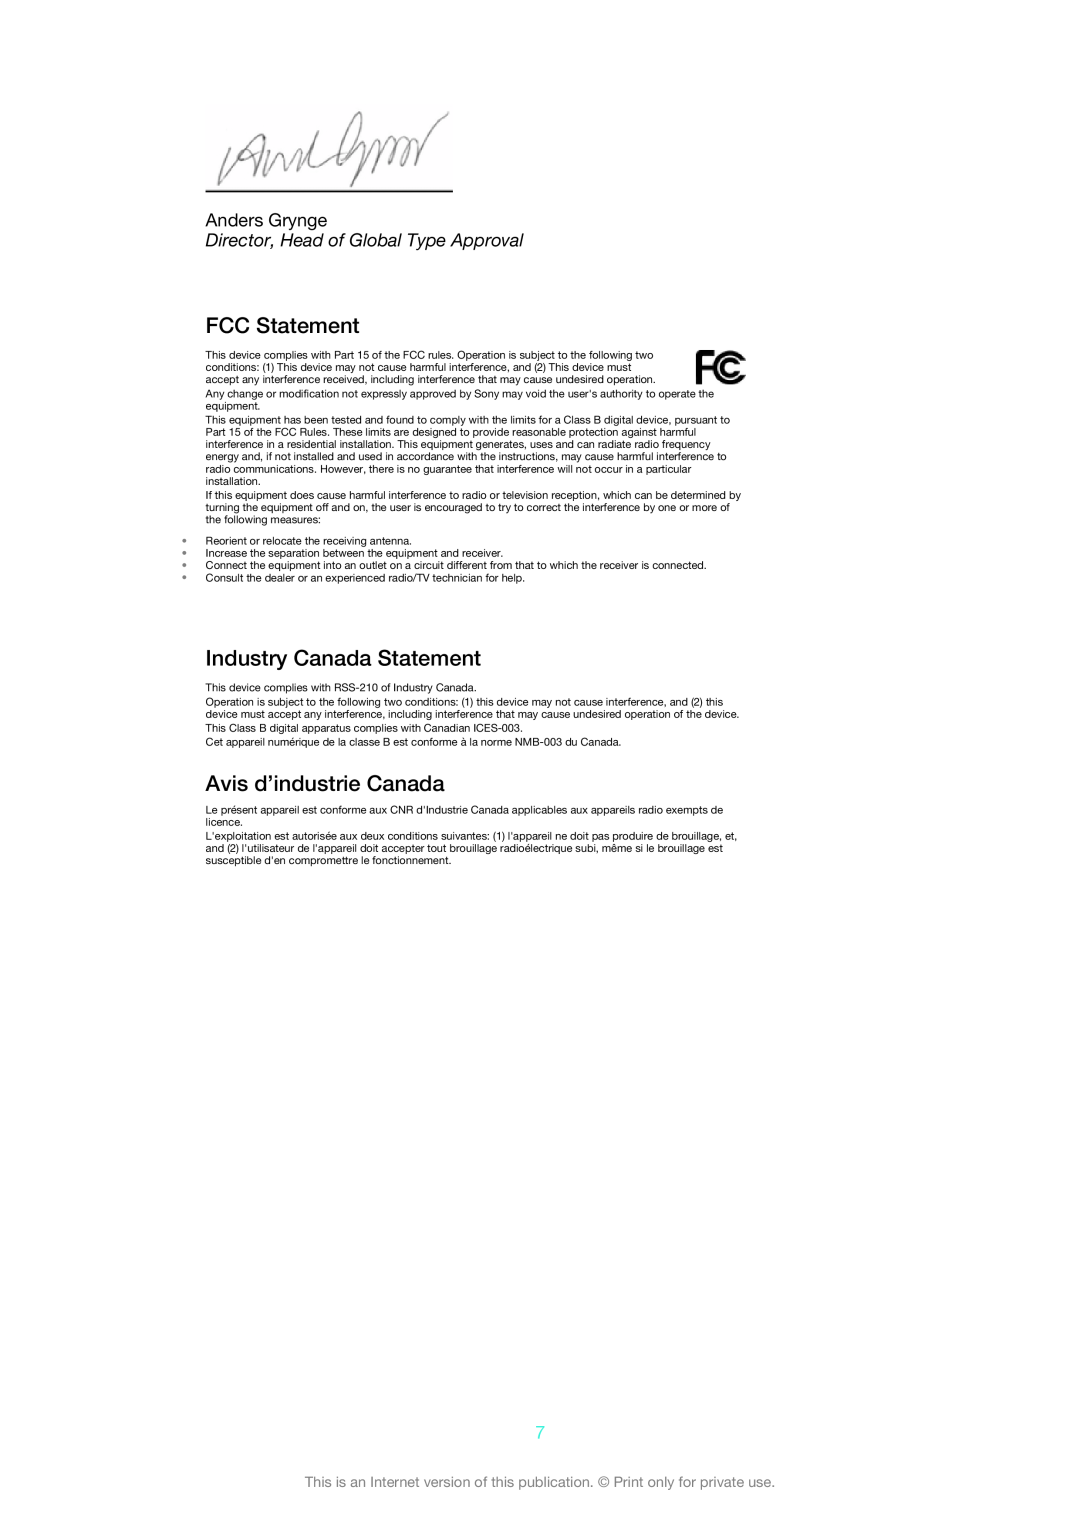 Sony DK31, DK30 manual FCC Statement, Industry Canada Statement, Avis d’industrie Canada, Anders Grynge 